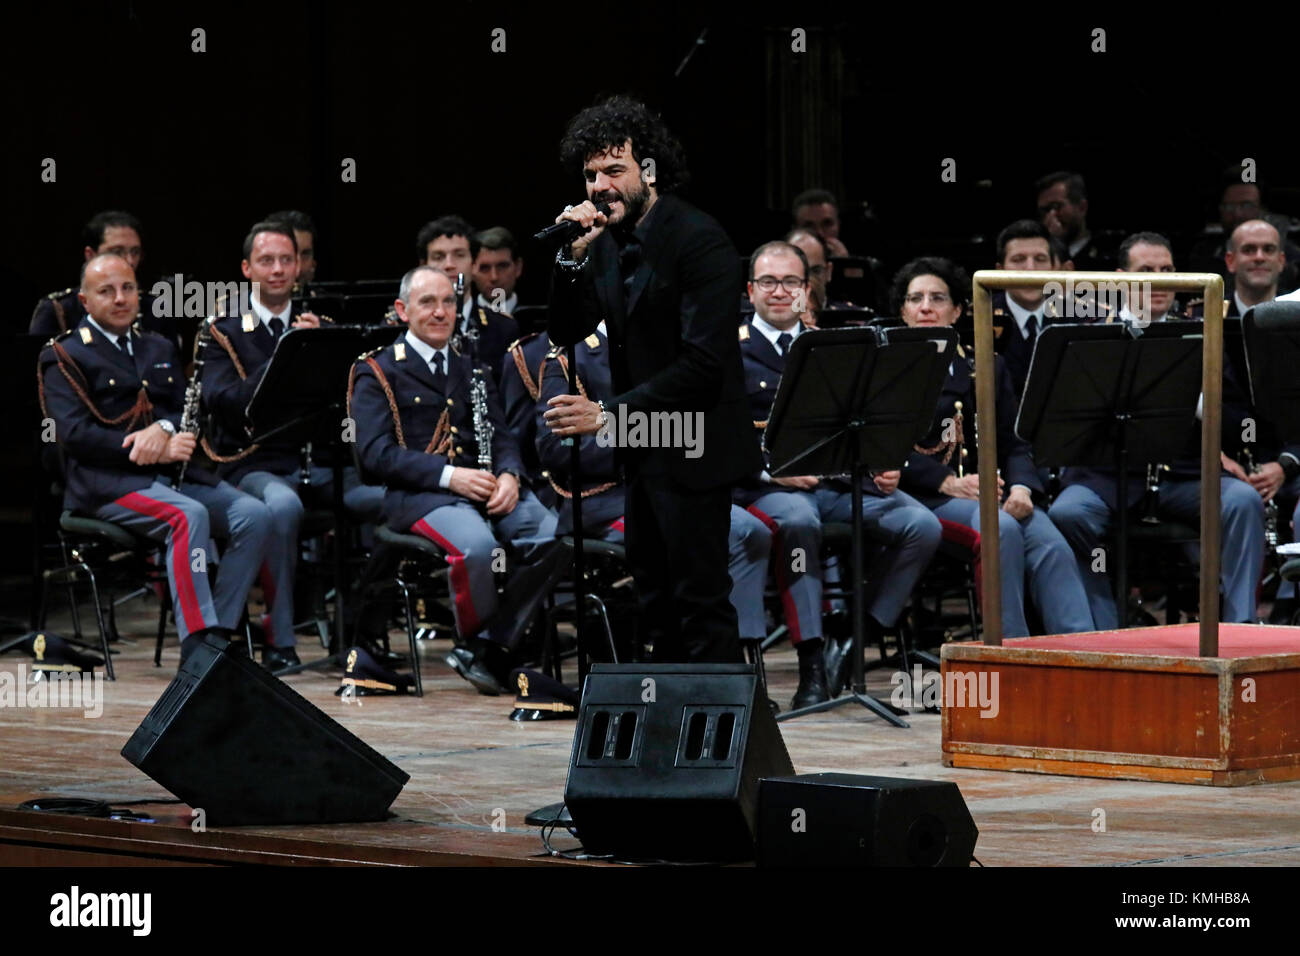 Roma, Italia - 11 dicembre 2017: il cantante Francesco Renga sul palco dell'Auditorium Parco della Musica in occasione del concerto della Polizia di Stato banda, "esserci sempre, con musica e parole". Foto Stock